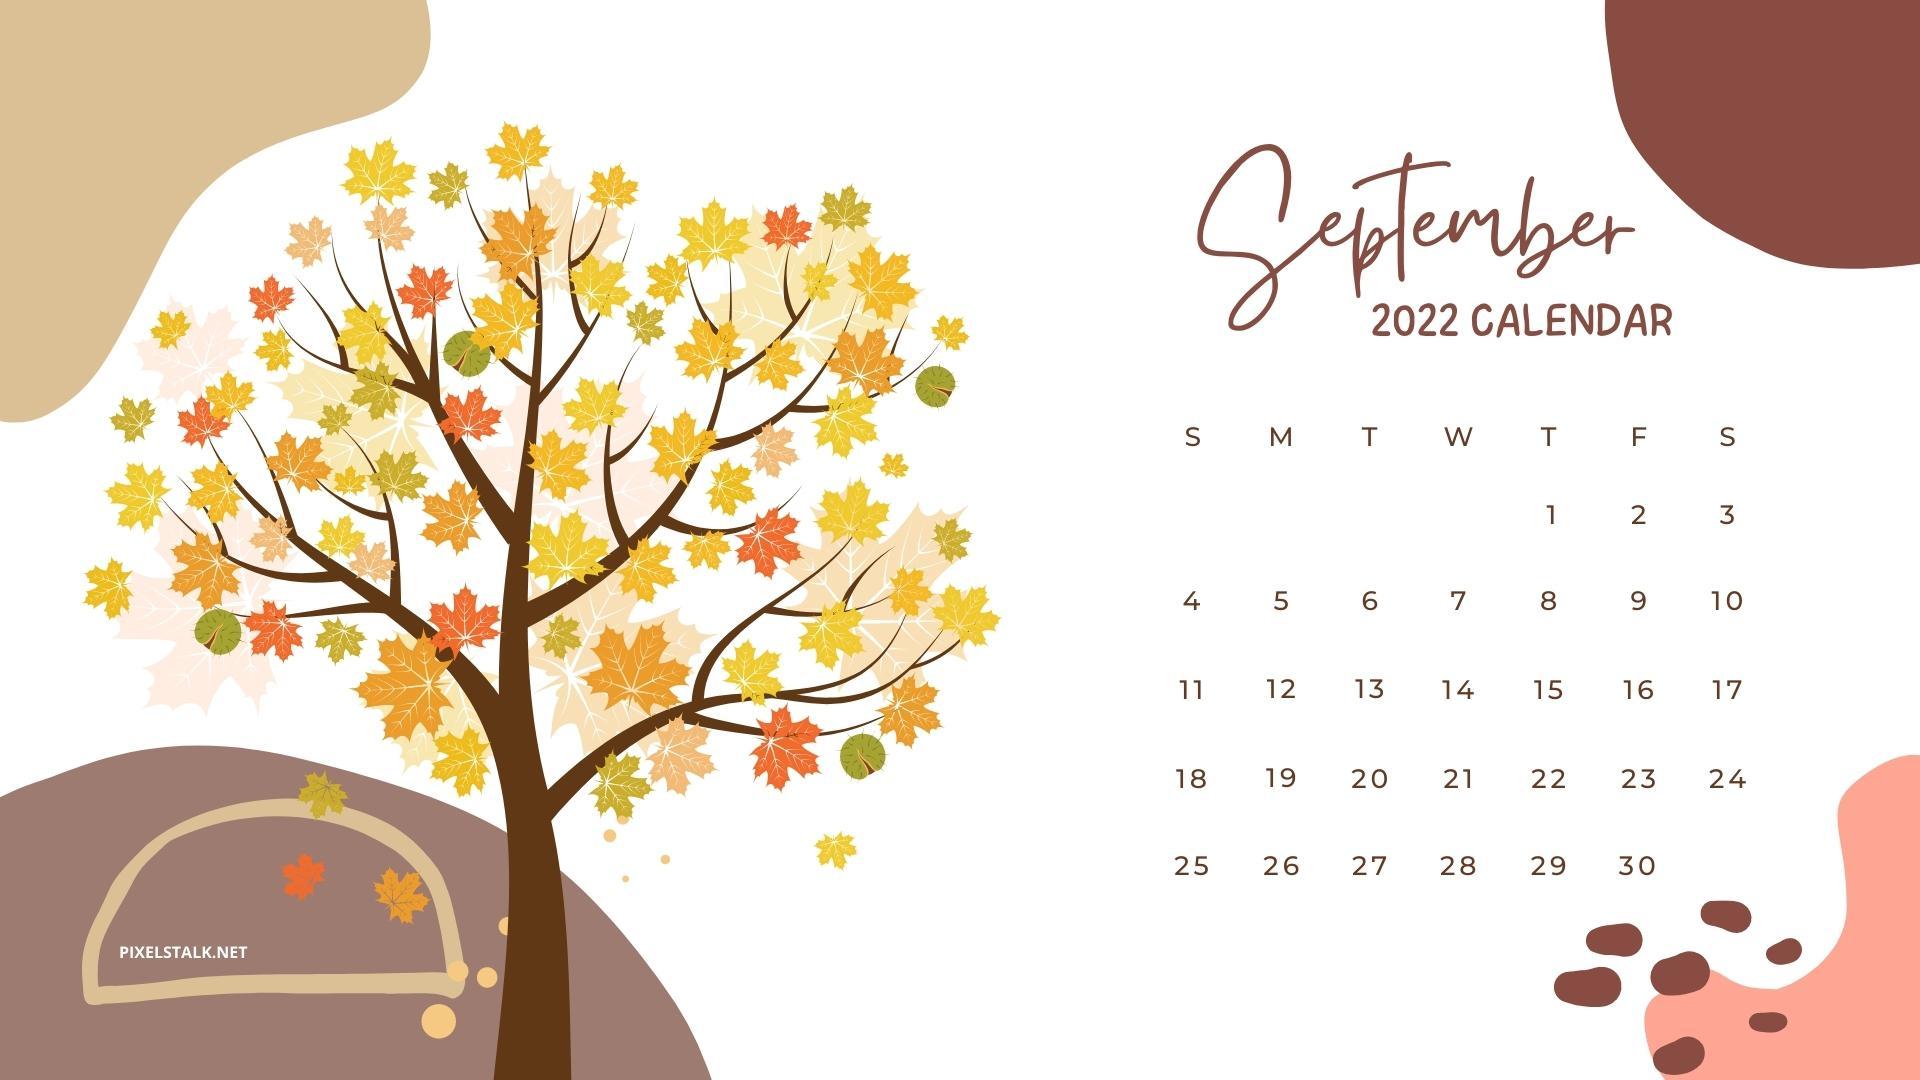 Hình nền lịch tháng 9 năm 2022 đầy màu sắc sẽ đem lại không gian làm việc mới mẻ và thoải mái cho bạn. Hãy truy cập ảnh liên quan để xem chi tiết hình nền đẹp và độc đáo cho tháng 9 năm